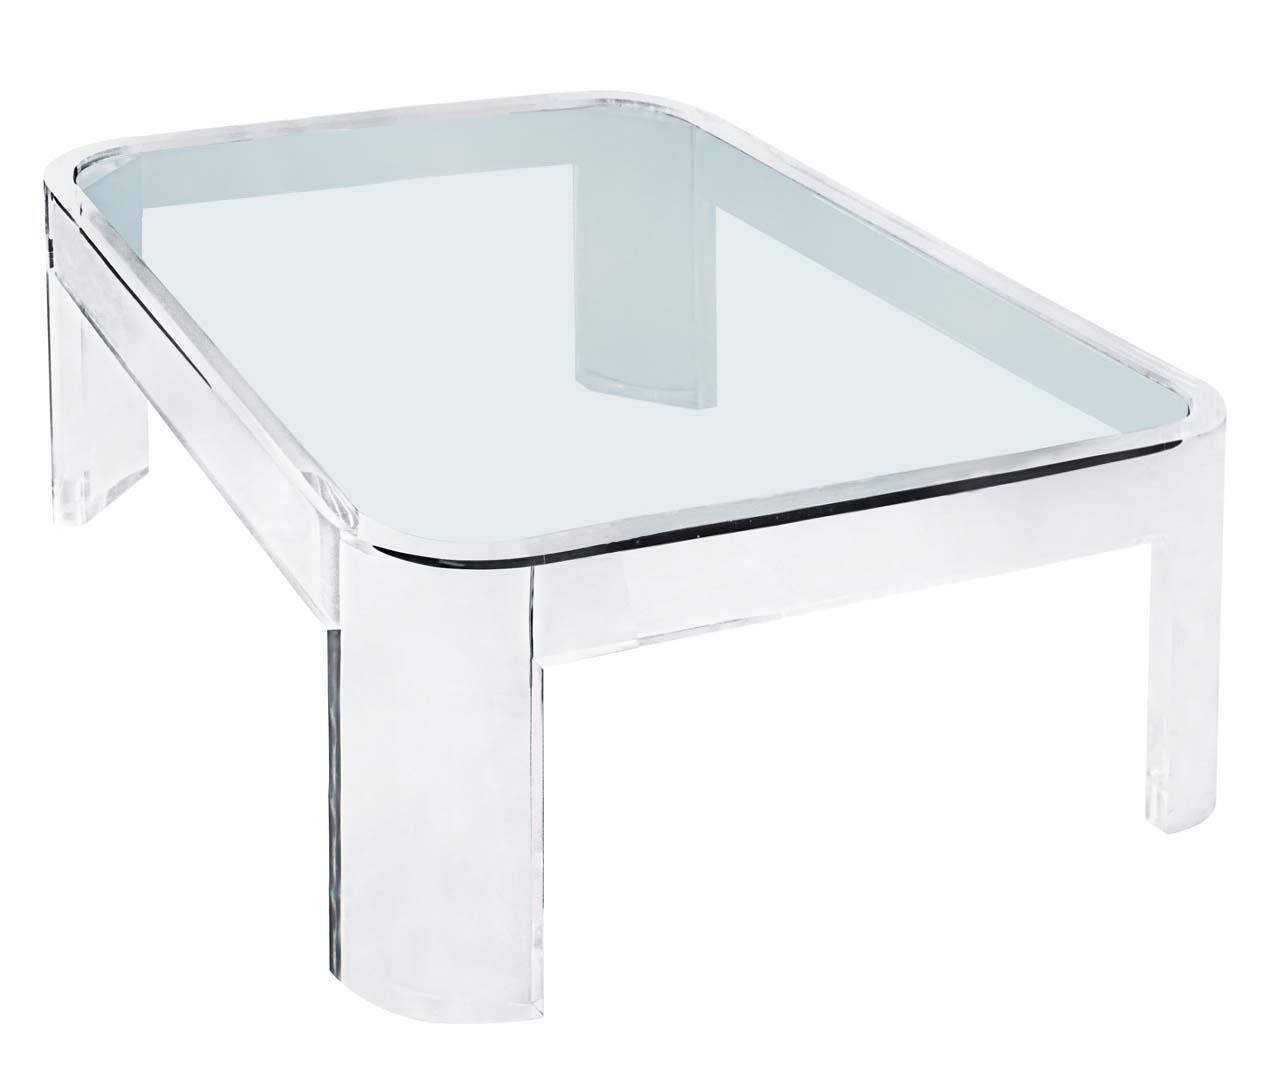 Fabriquée dans les années 1970, cette table basse a été produite par Les Prismatiques, qui se concentraient principalement sur la lucite et le verre dans leurs produits. Composée d'épaisses feuilles de lucite claire et de verre, cette table basse